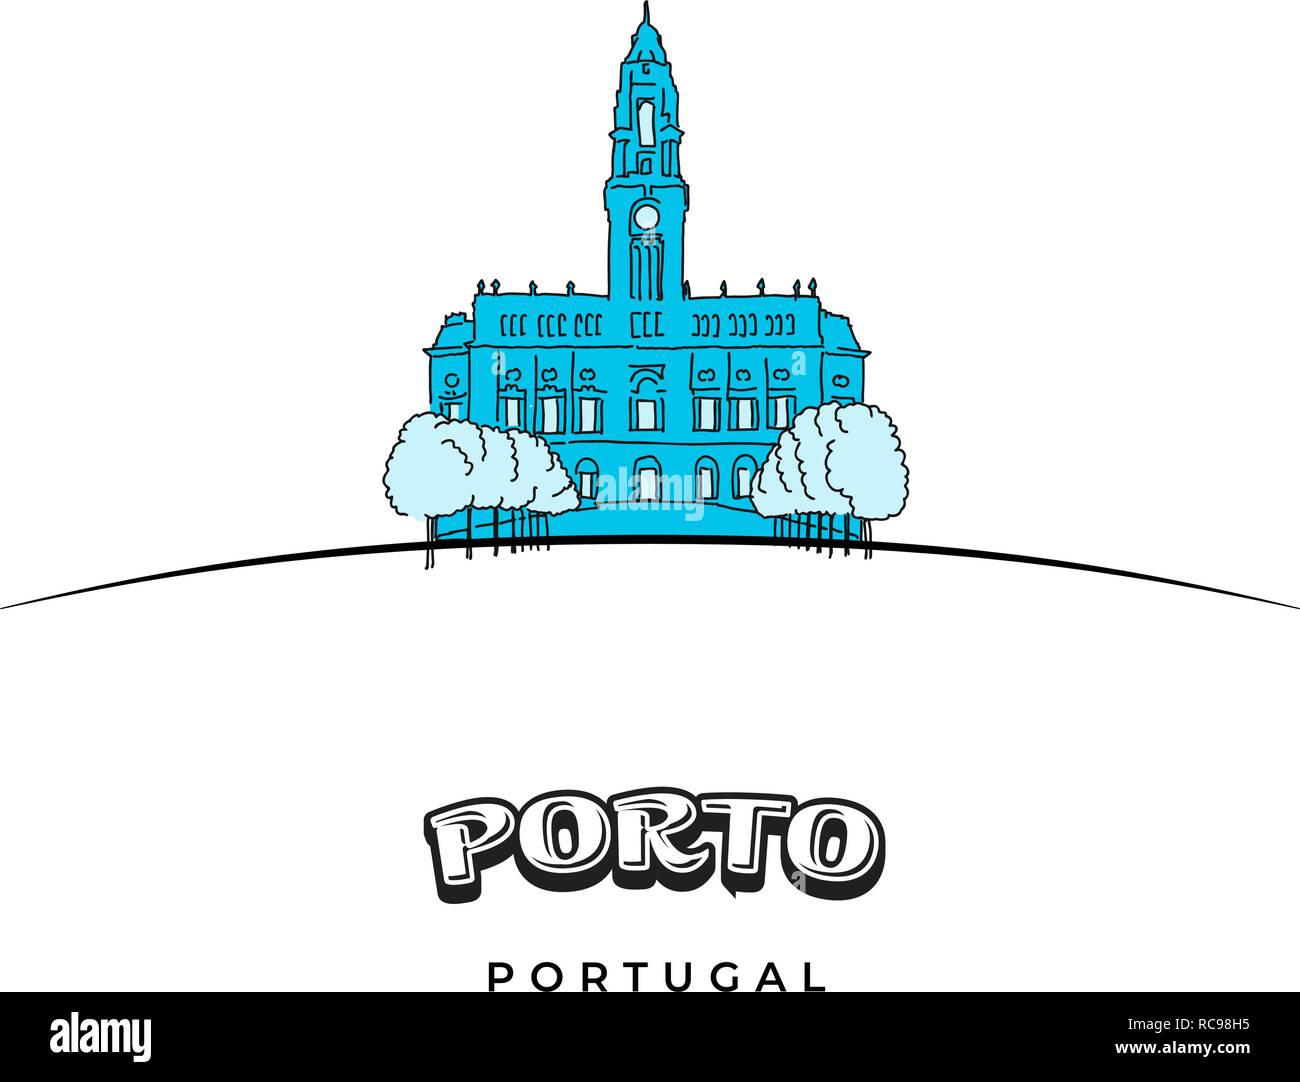 Porto Portugal Reisen anmelden. Handgezeichneten Vector Illustration. Berühmte Reiseziele Serie. Stock Vektor